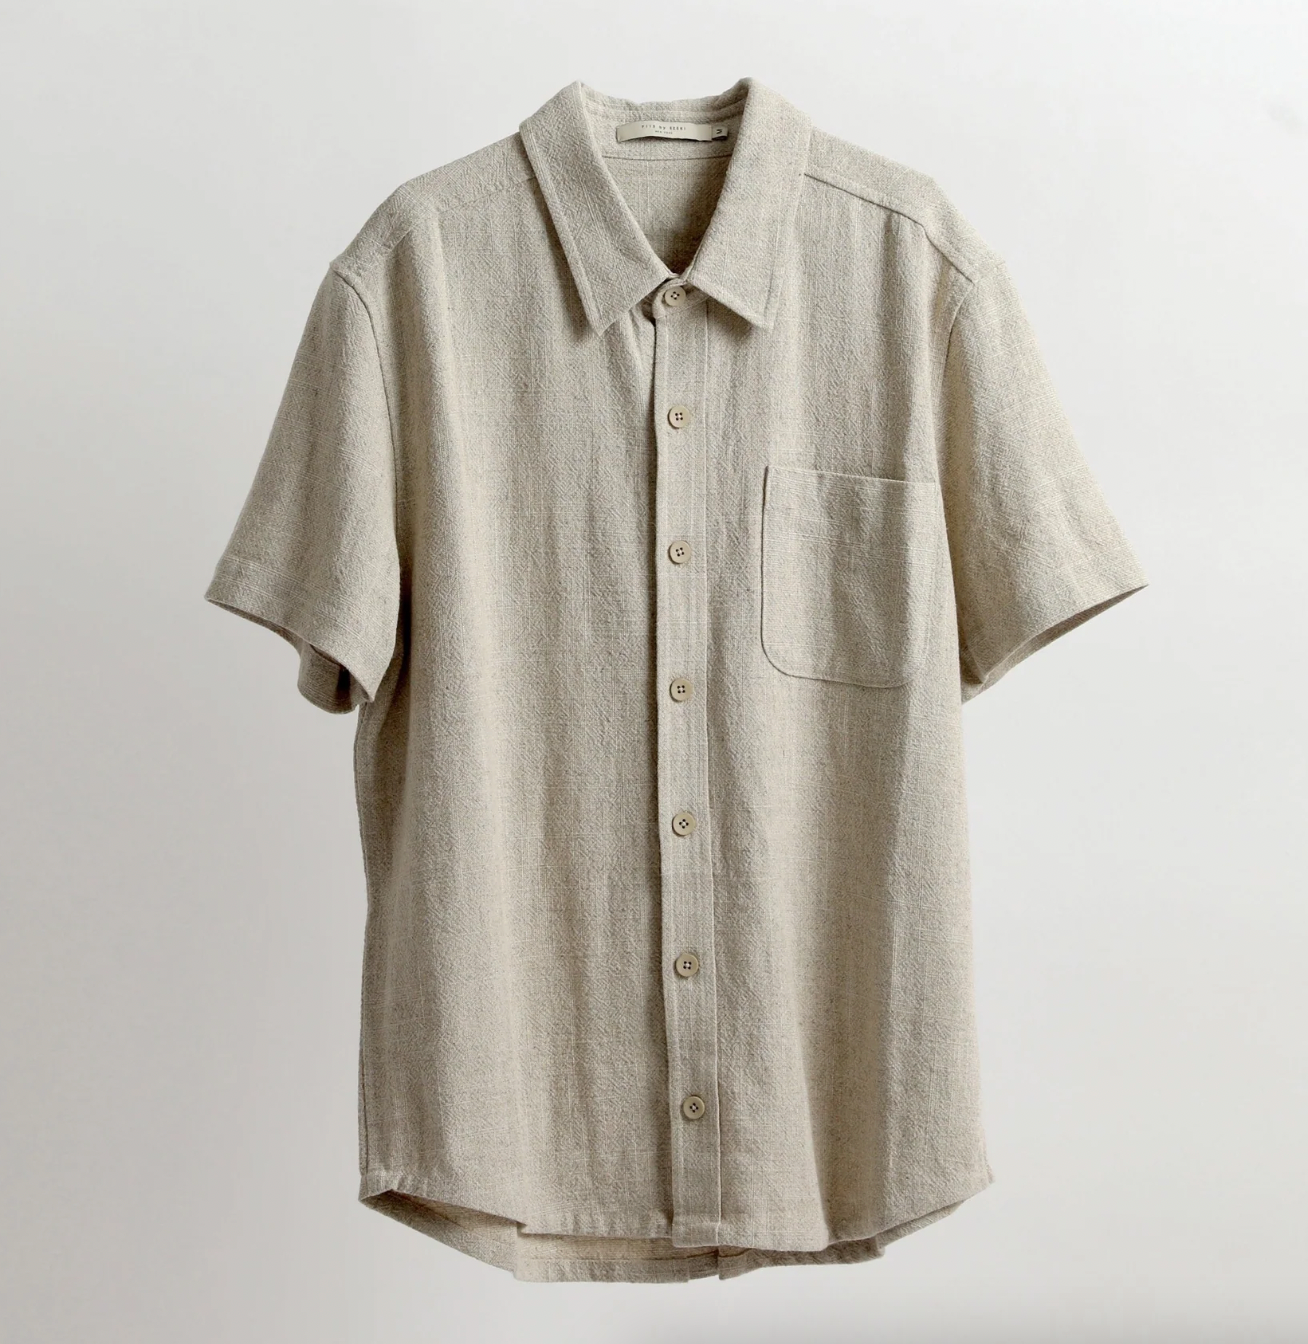 Product Image for Signature Short-Sleeved Shirt - Unisex, Oatmeal